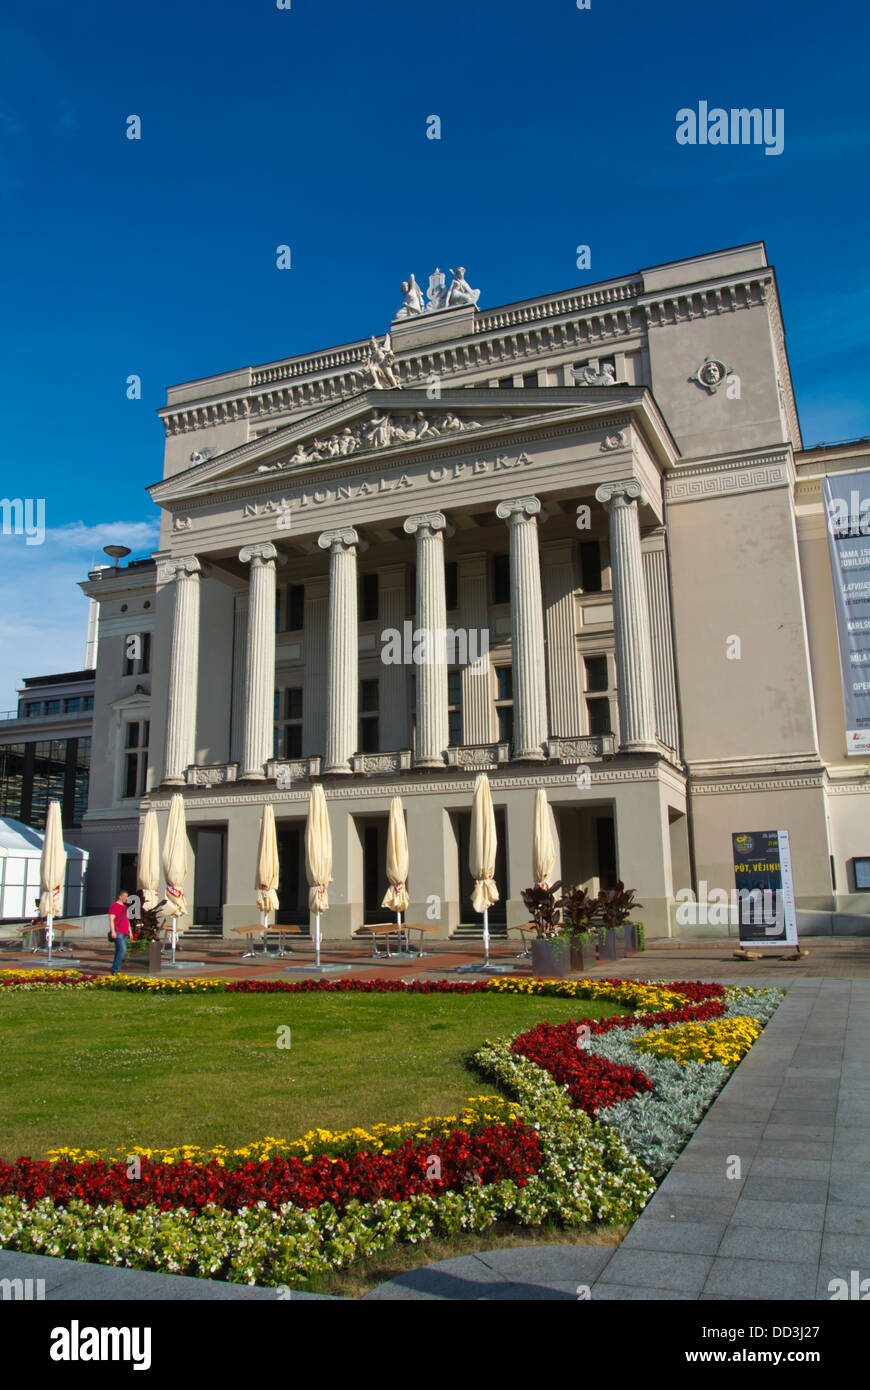 Bâtiment de l'Opéra National de Lettonie Riga central des Etats baltes Europe du nord Banque D'Images